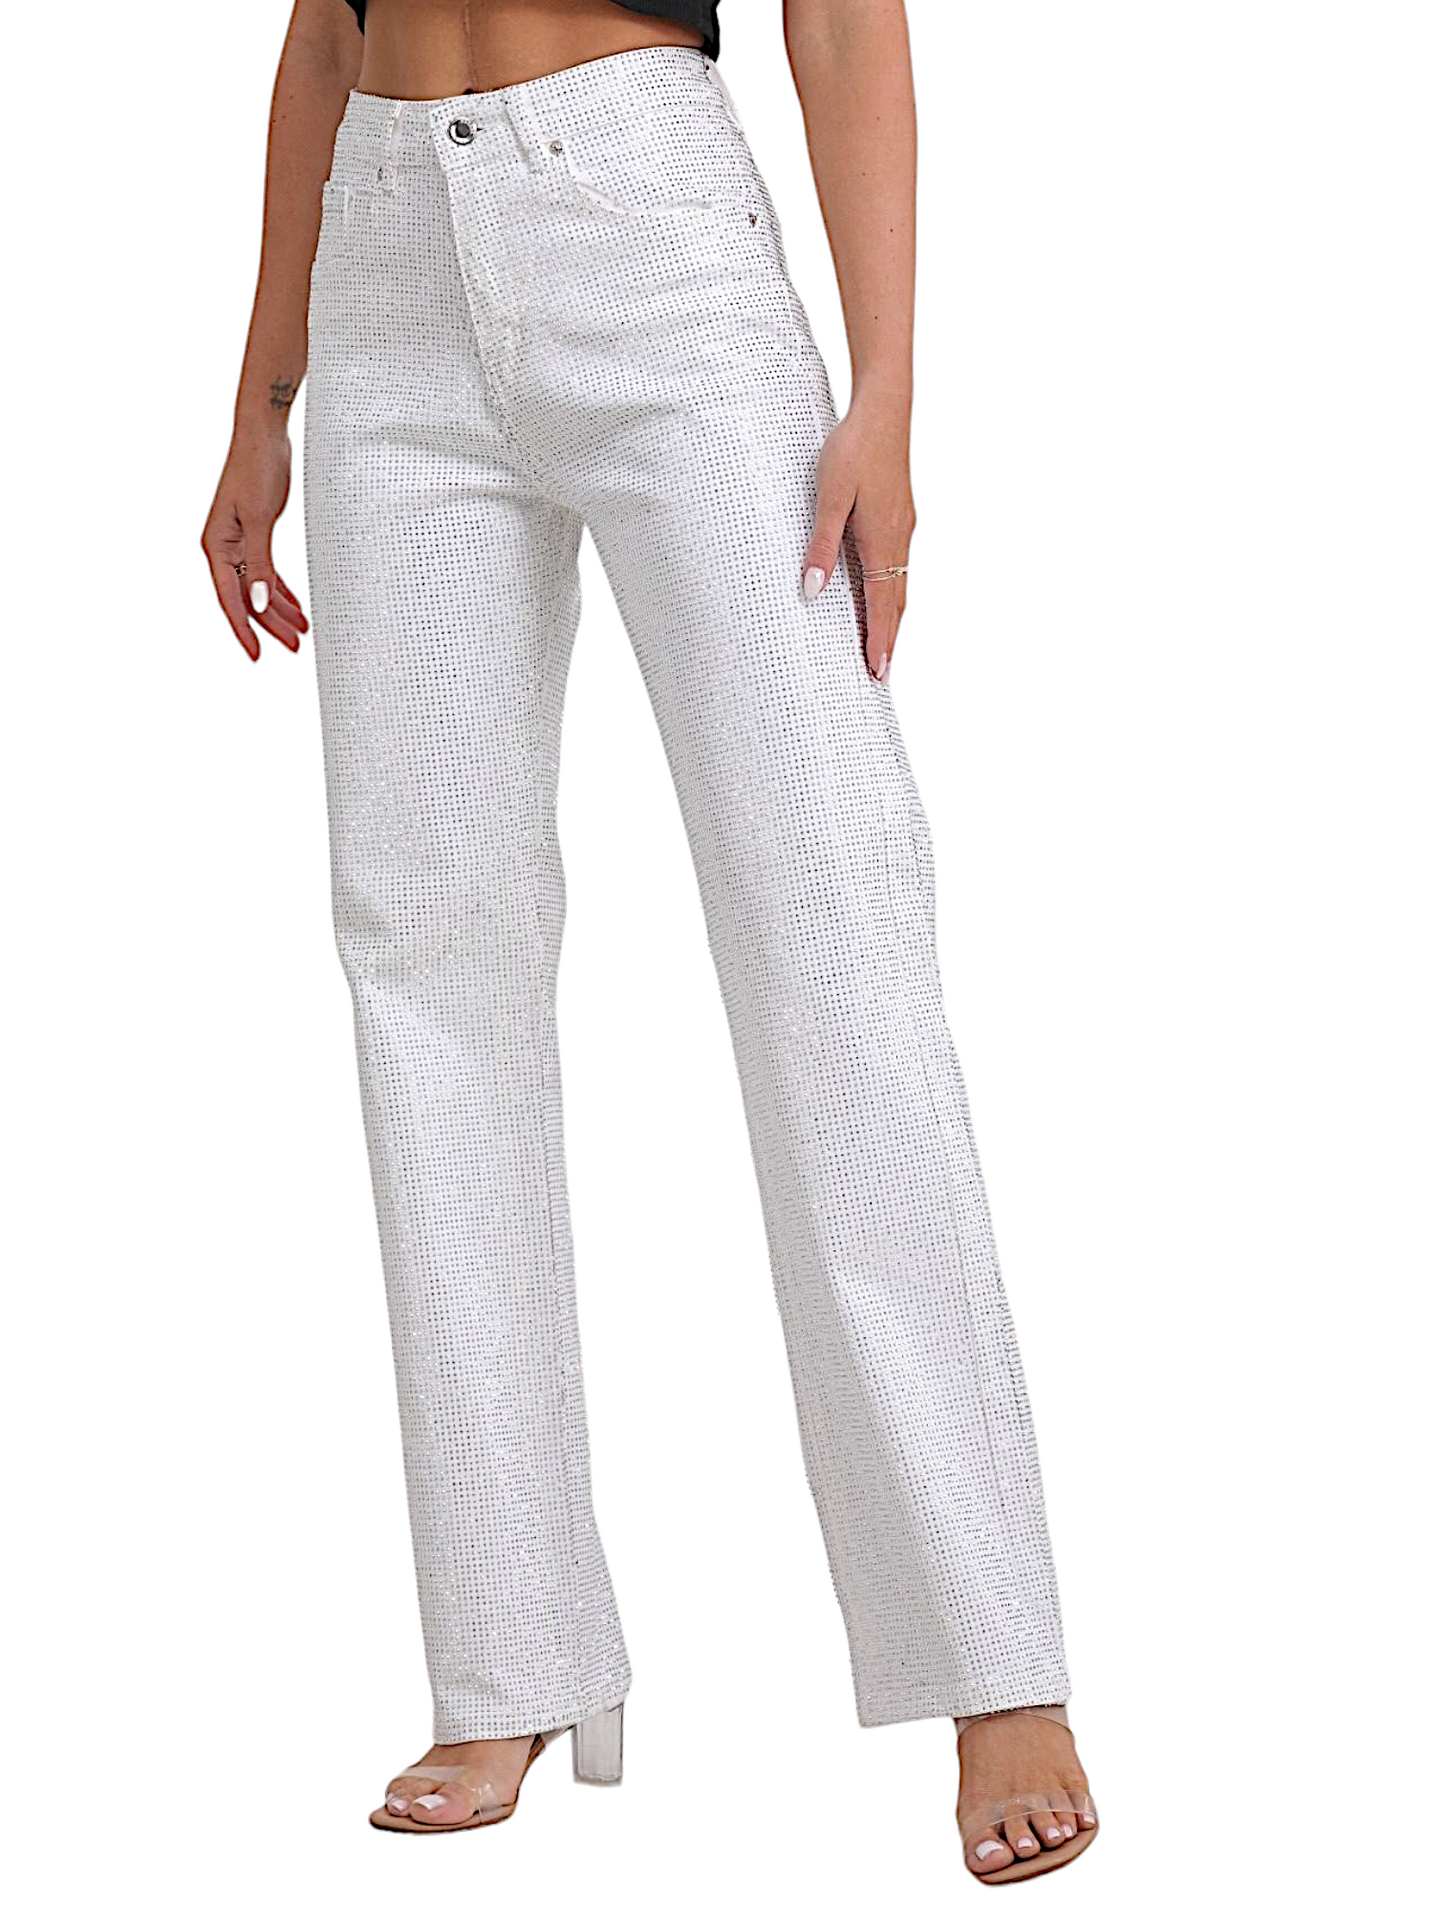 Jeans in bianco multi strass (super richiesto)